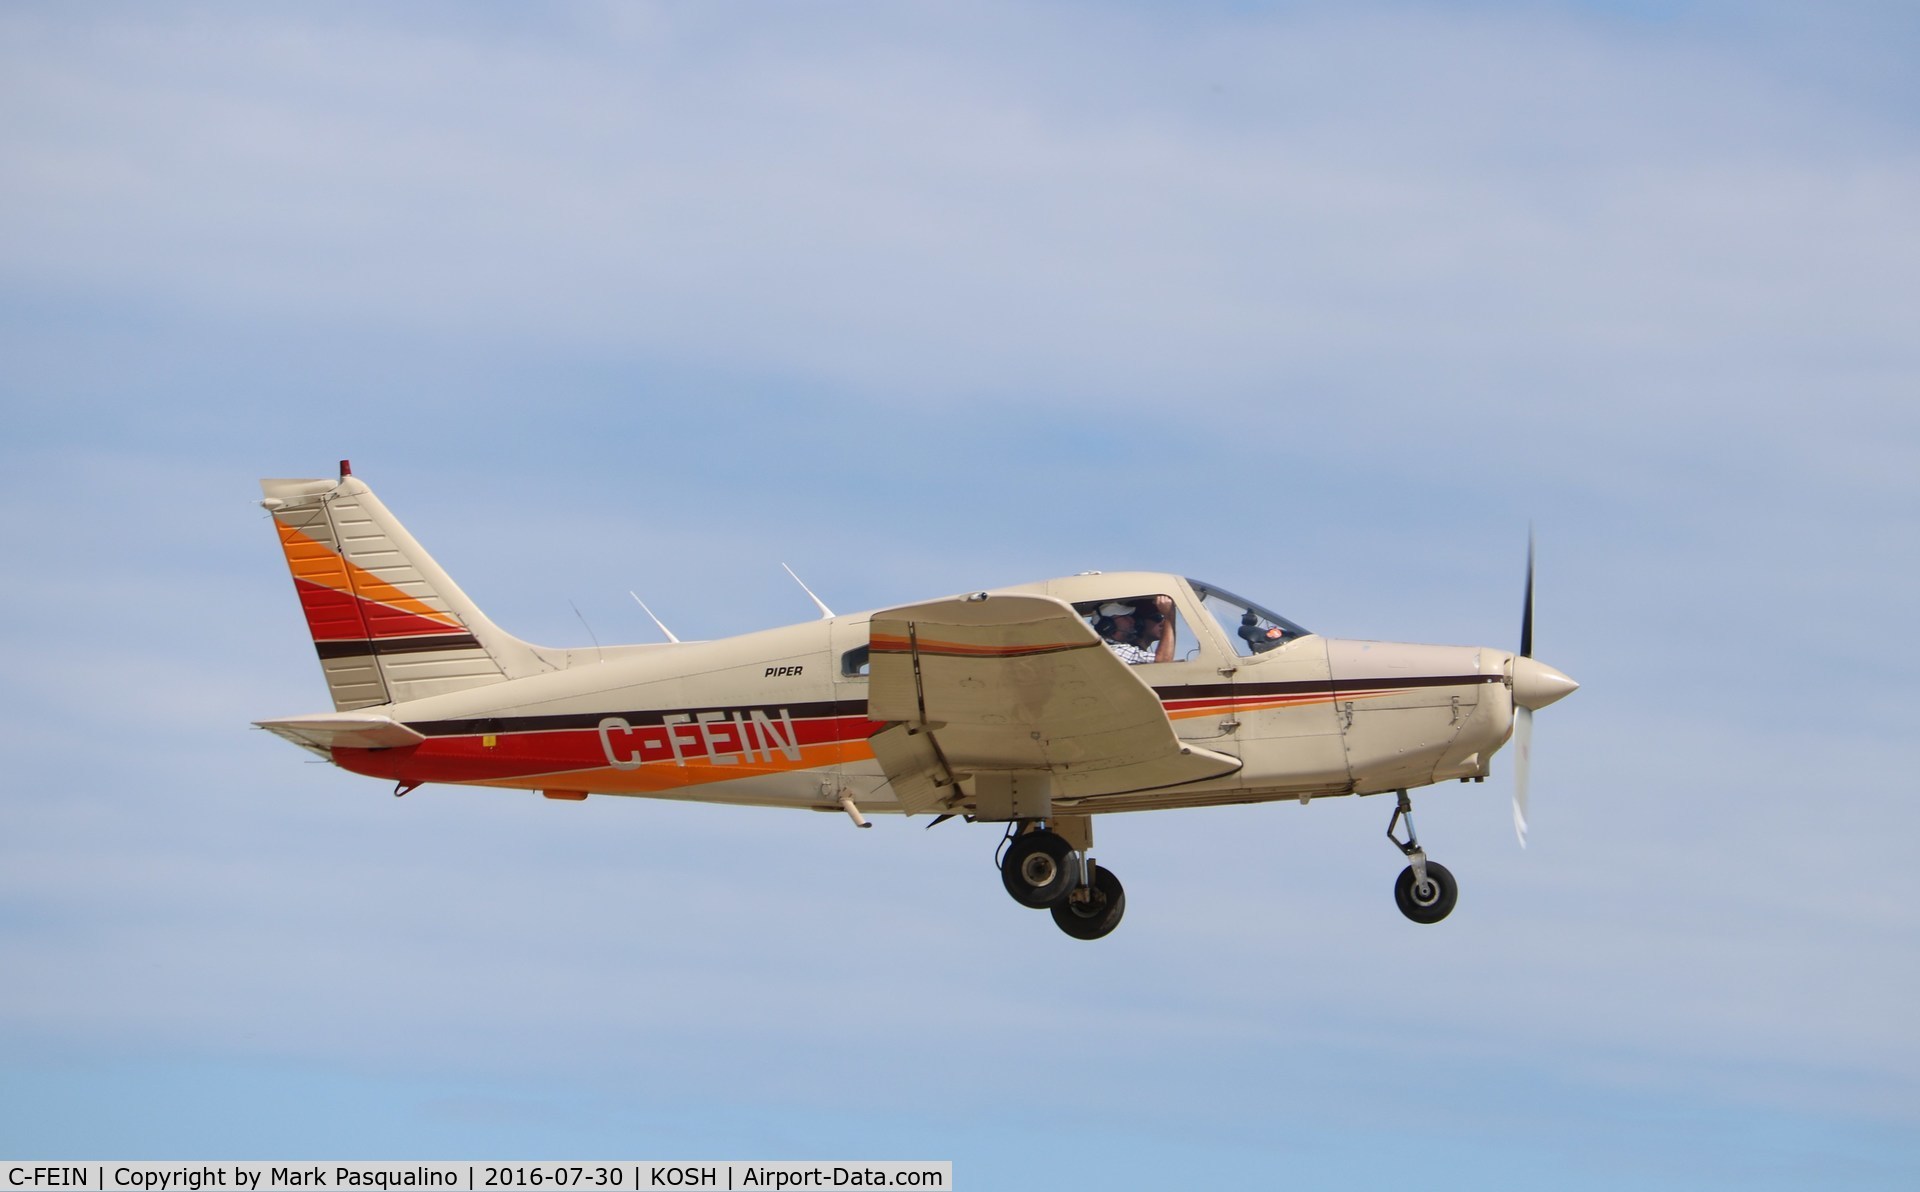 C-FEIN, 1979 Piper PA-28-161 C/N 28-8016178, Piper PA-28-161